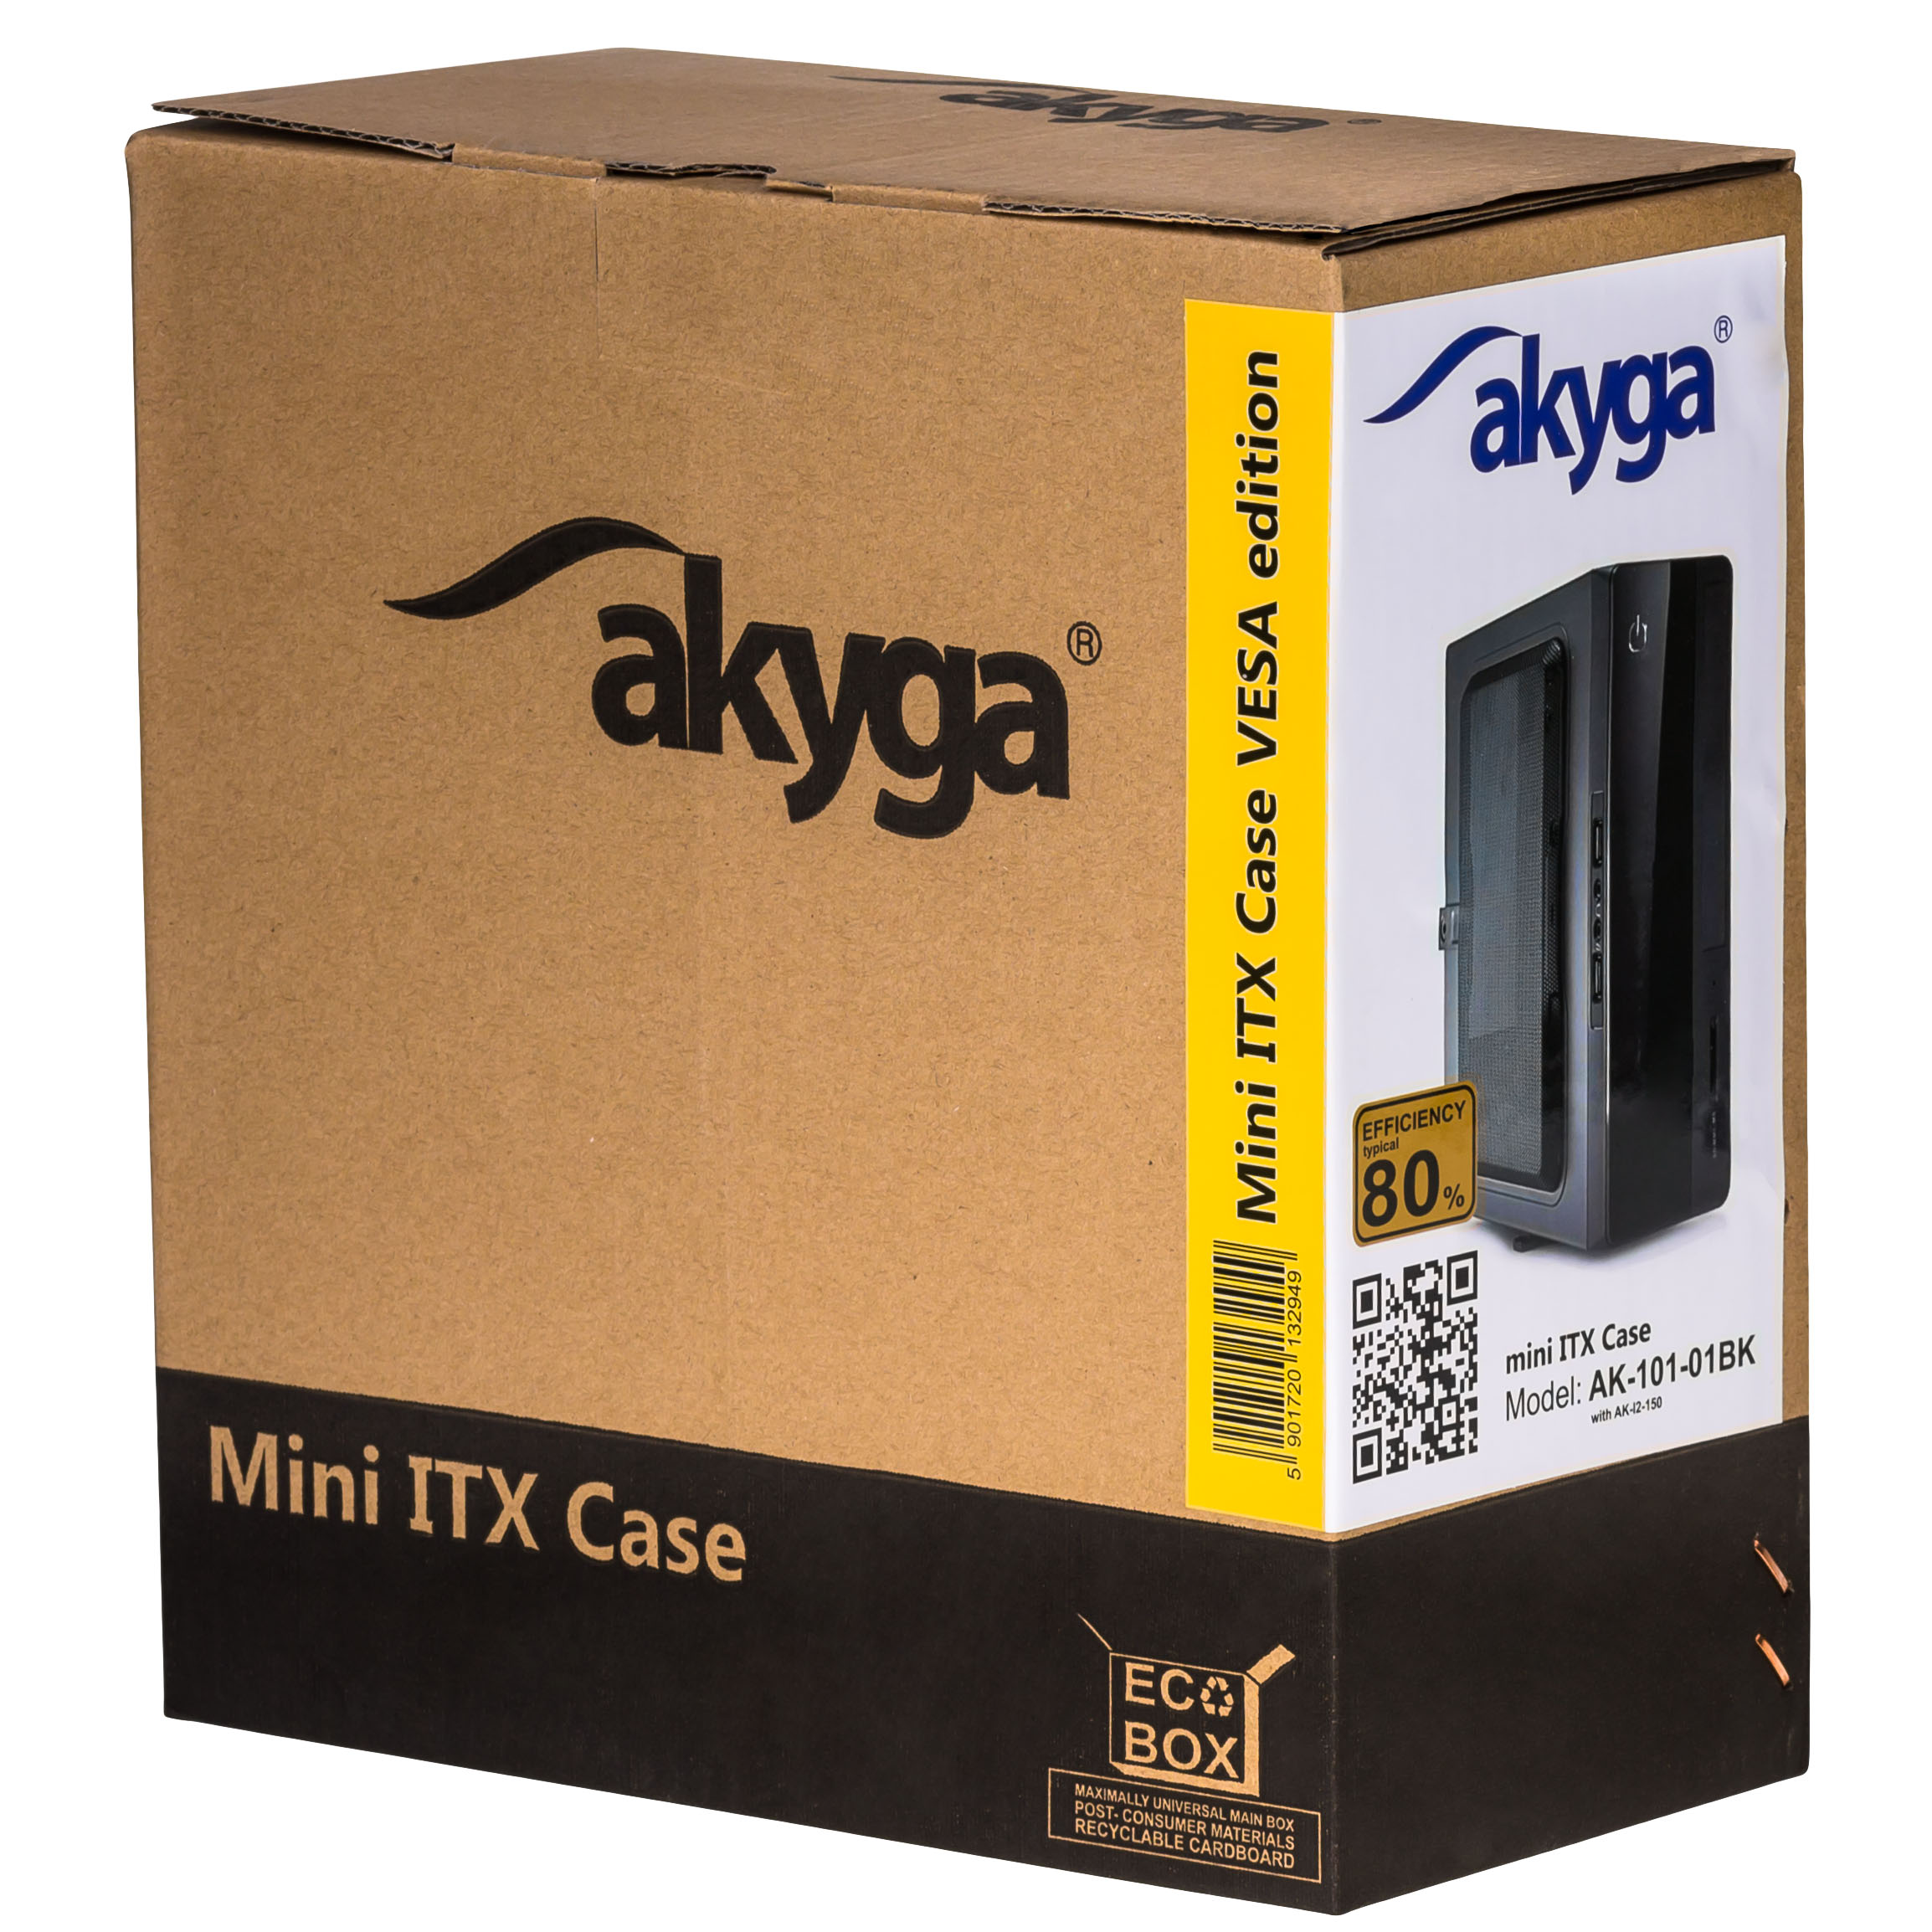 Mini ITX Case AK-100-01BK VESA + 60W power supply